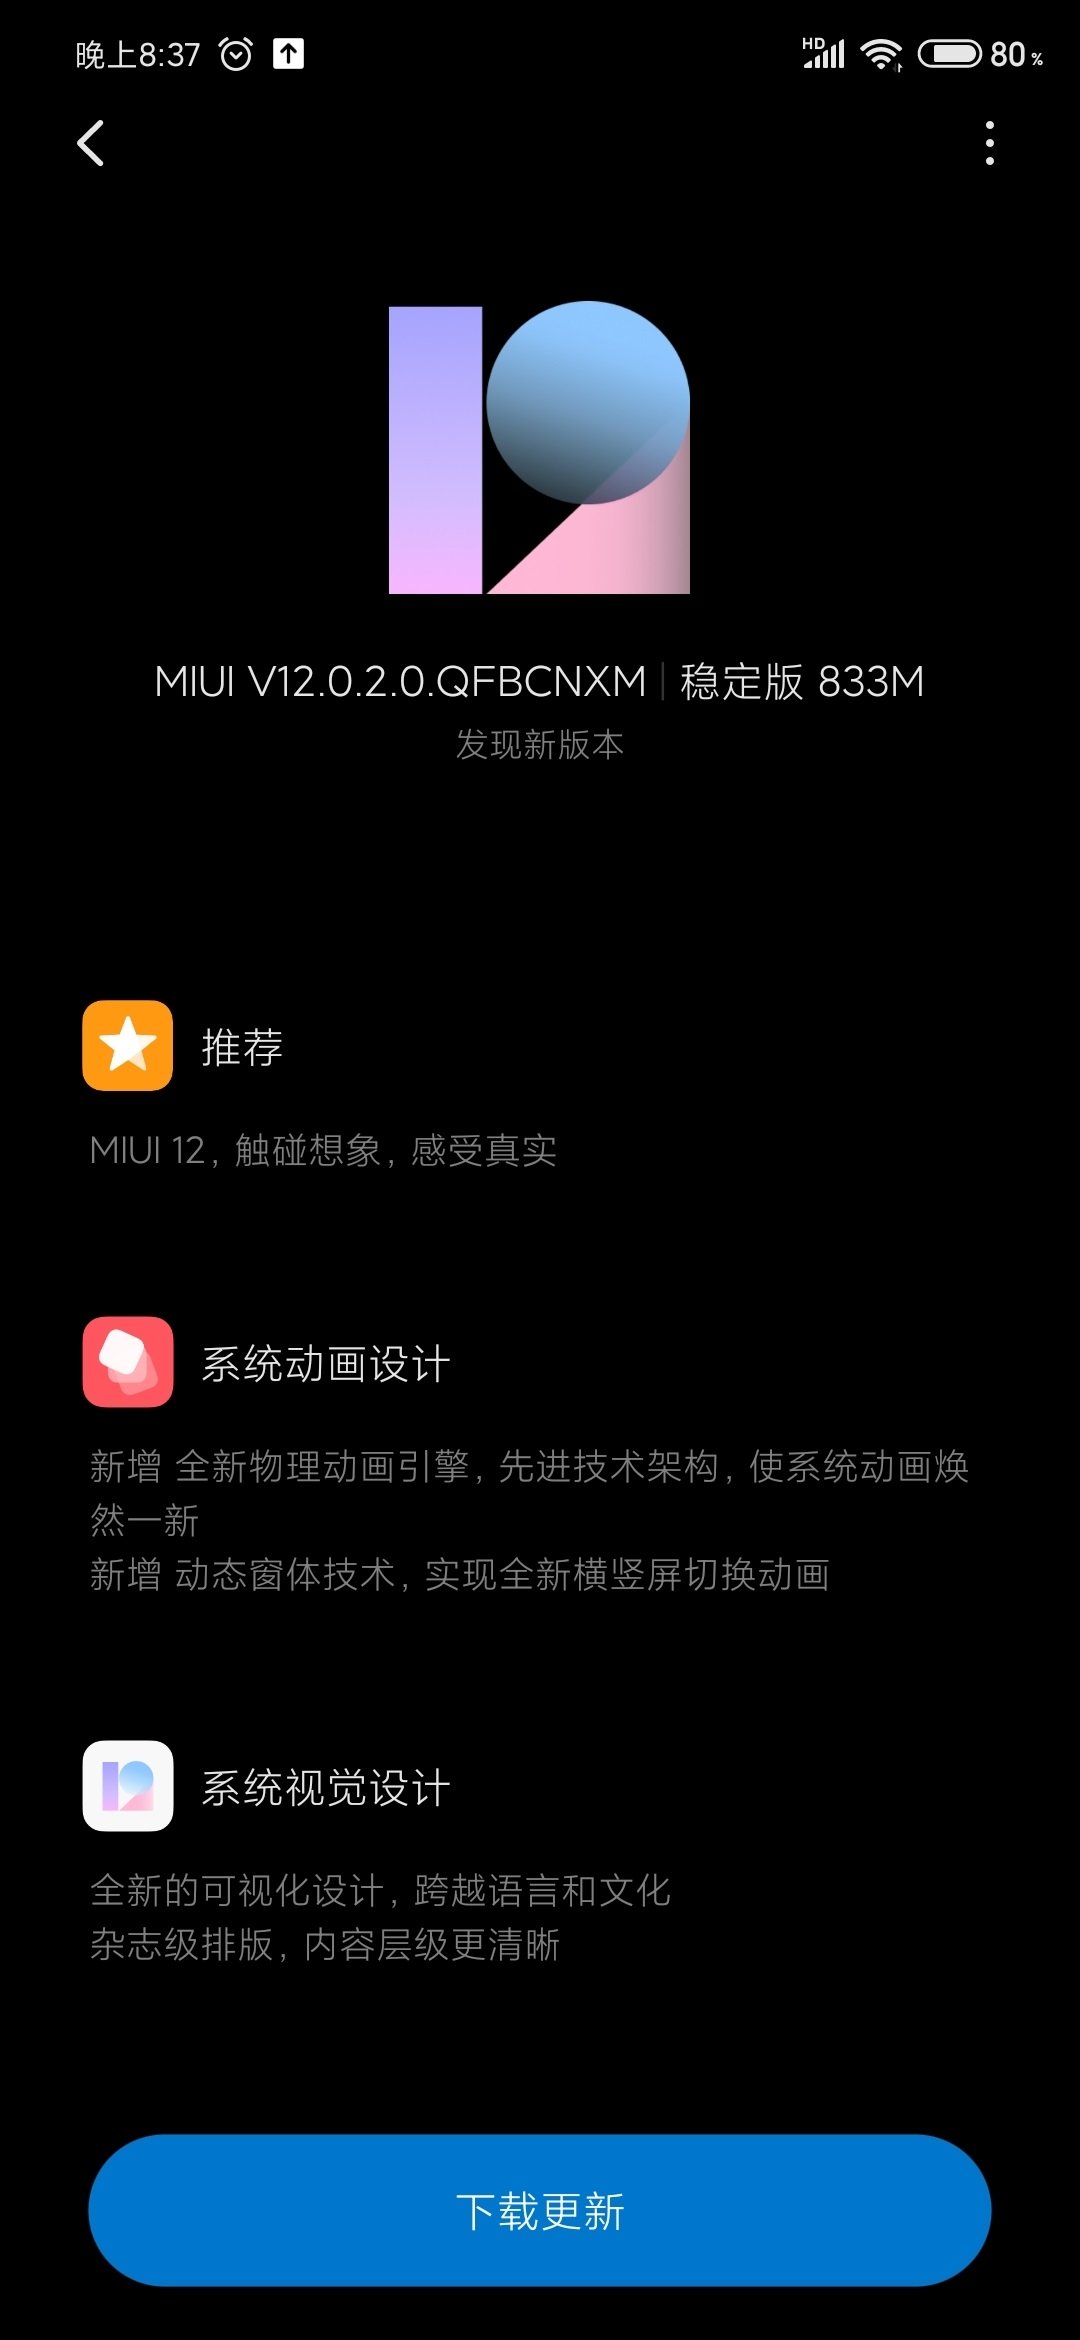 Mi 9 SE MIUI 12 update ကို